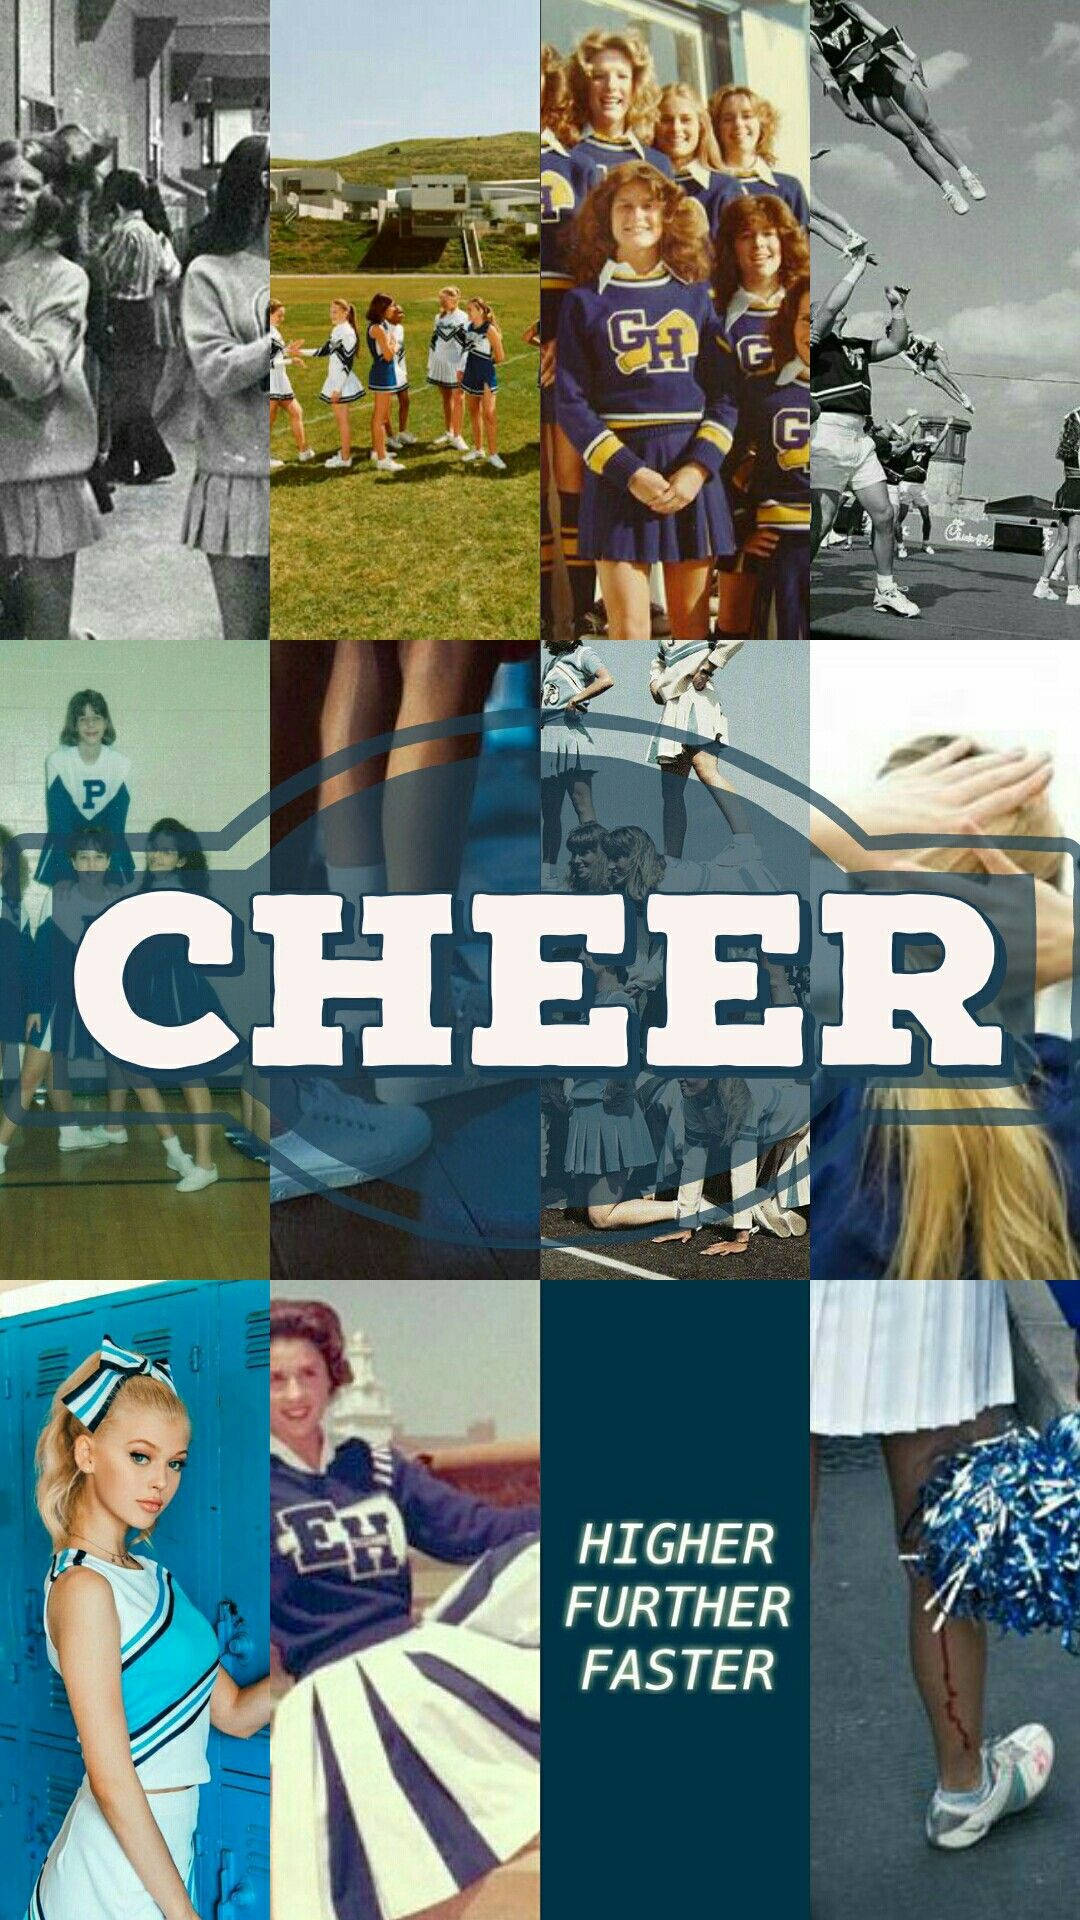 Cheerleader 1080 X 1920 Wallpaper